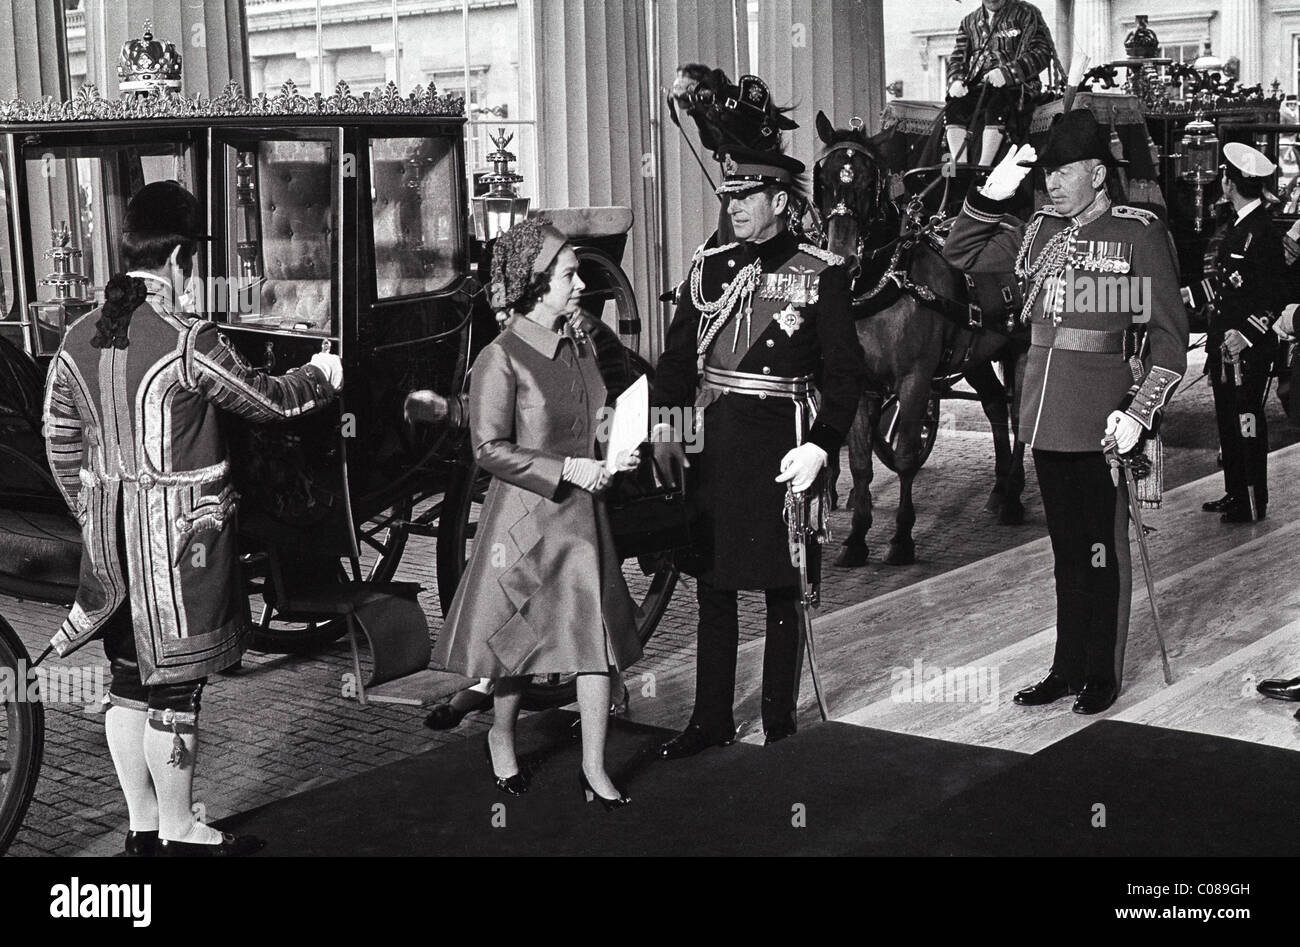 Ihre Majestät die Königin, die nach der Hochzeit von Prinzessin Anne und Mark Phillips 14/11/73 Prinz Philip am Buckingham Palace eintraf. Bild von DAVE BAGNALL Stockfoto